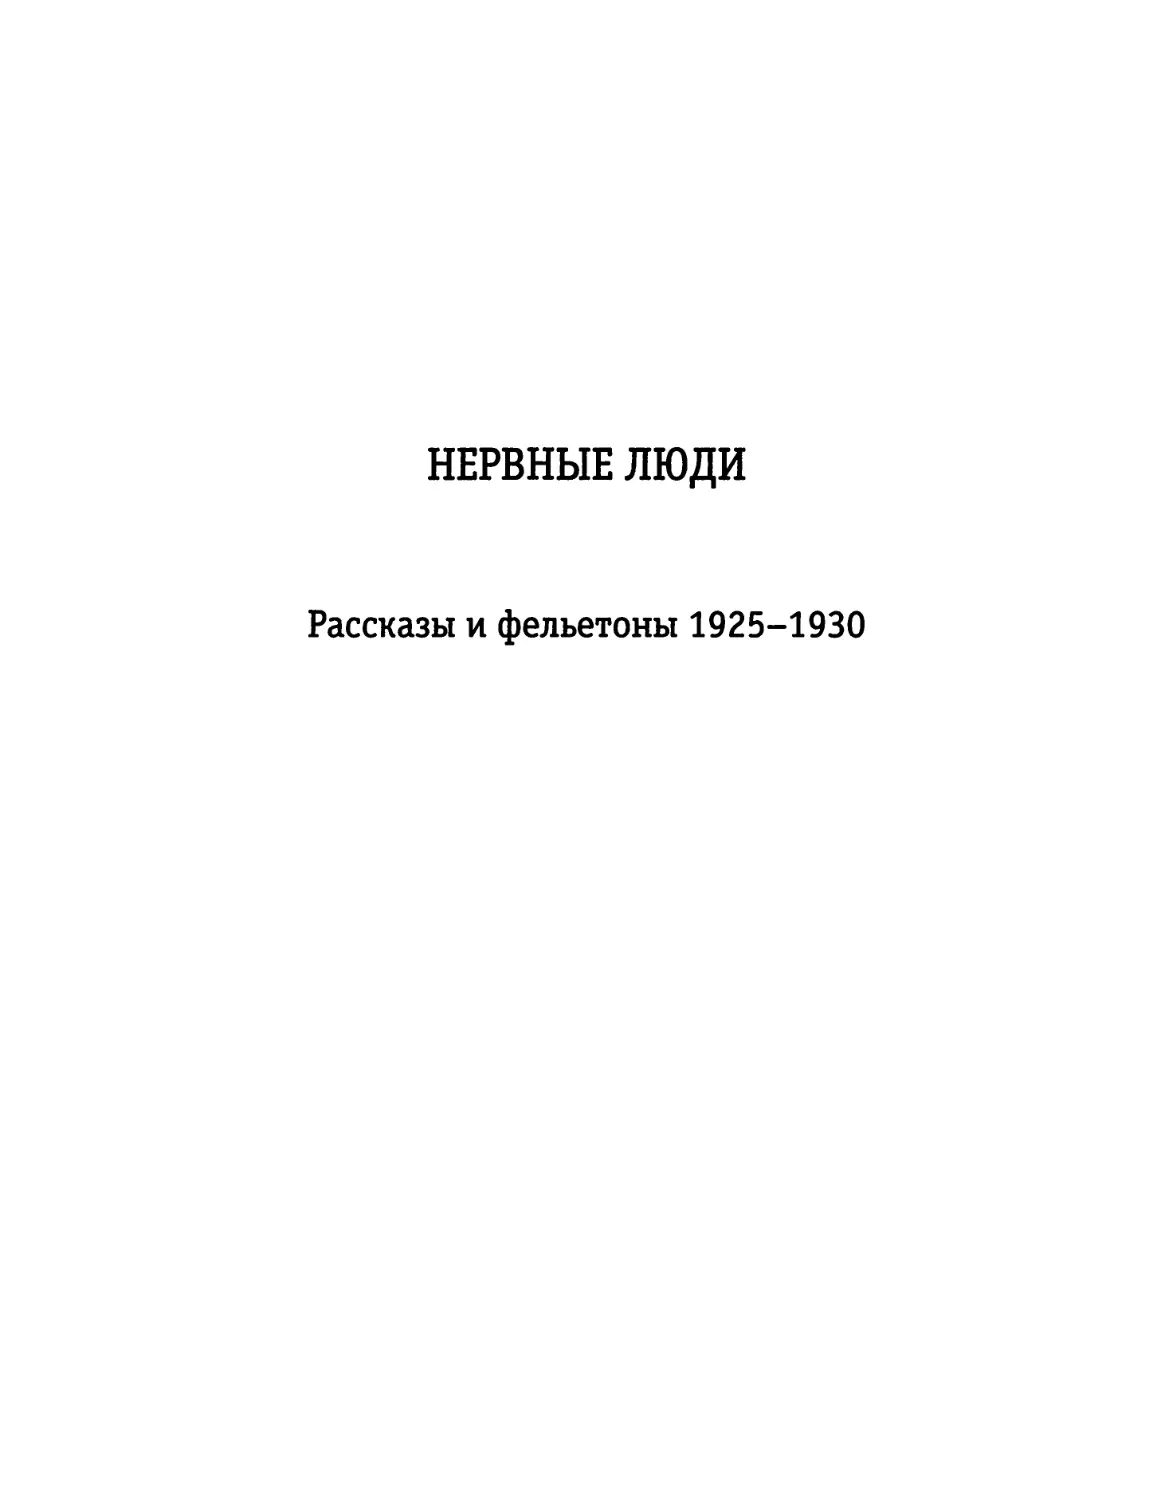 НЕРВНЫЕ ЛЮДИ. Рассказы и фельетоны 1925-1930